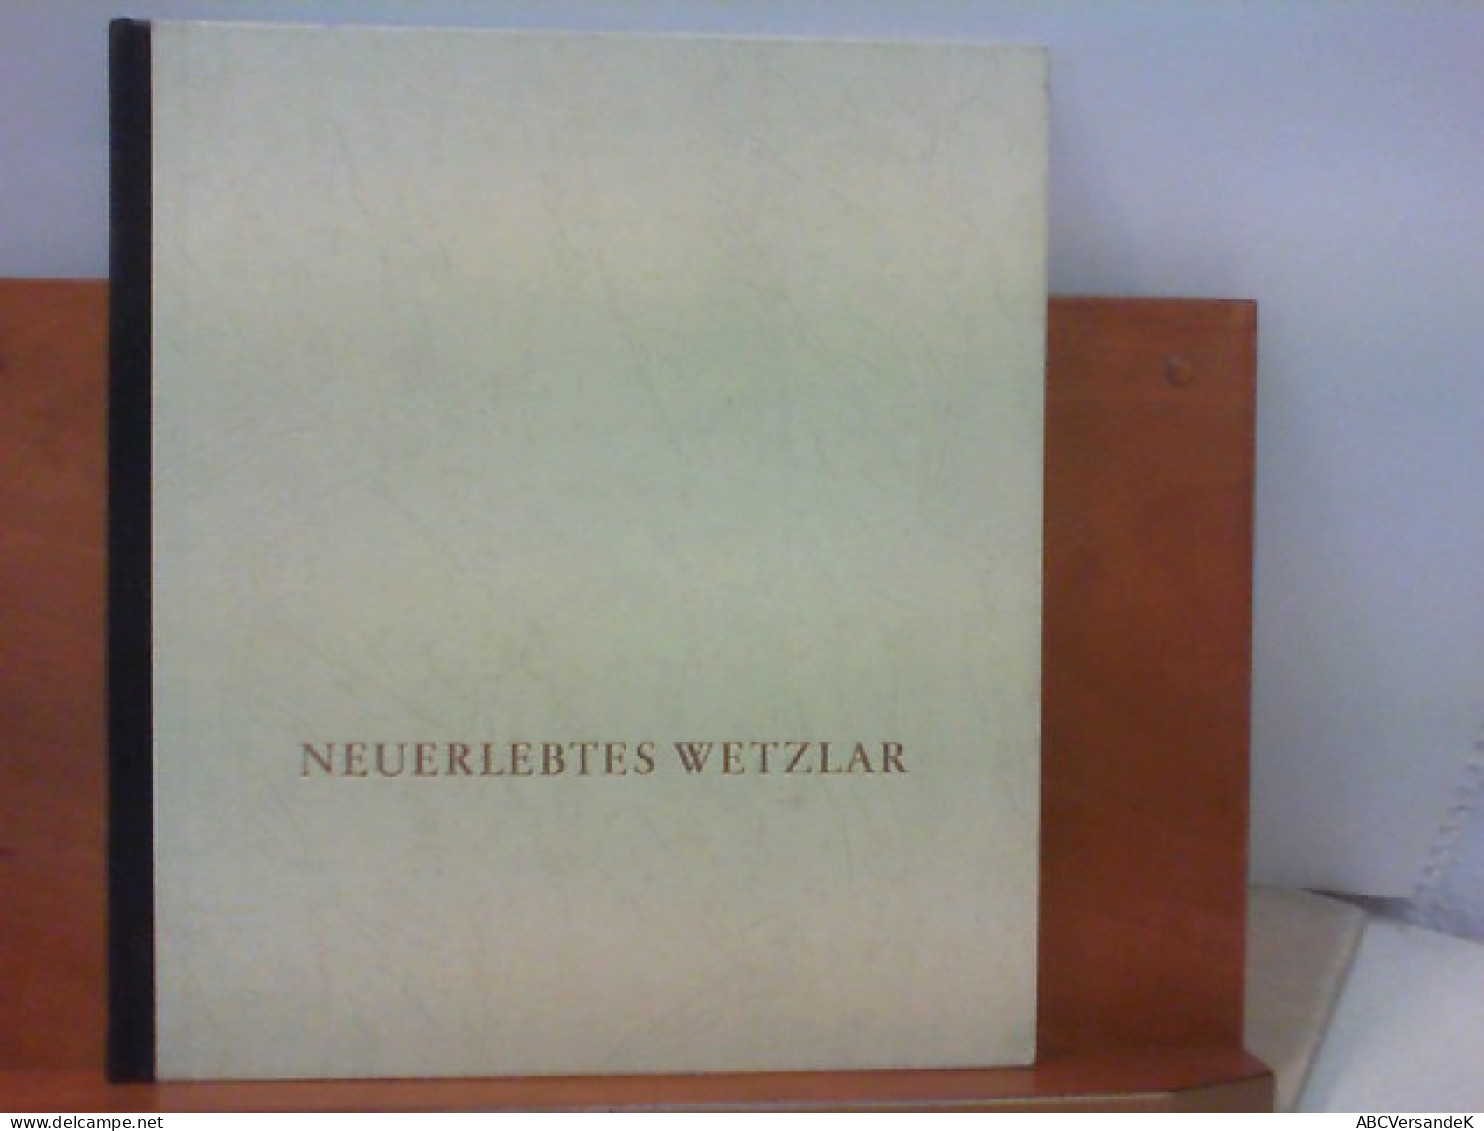 Neuerlebtes Wetzlar - Hesse